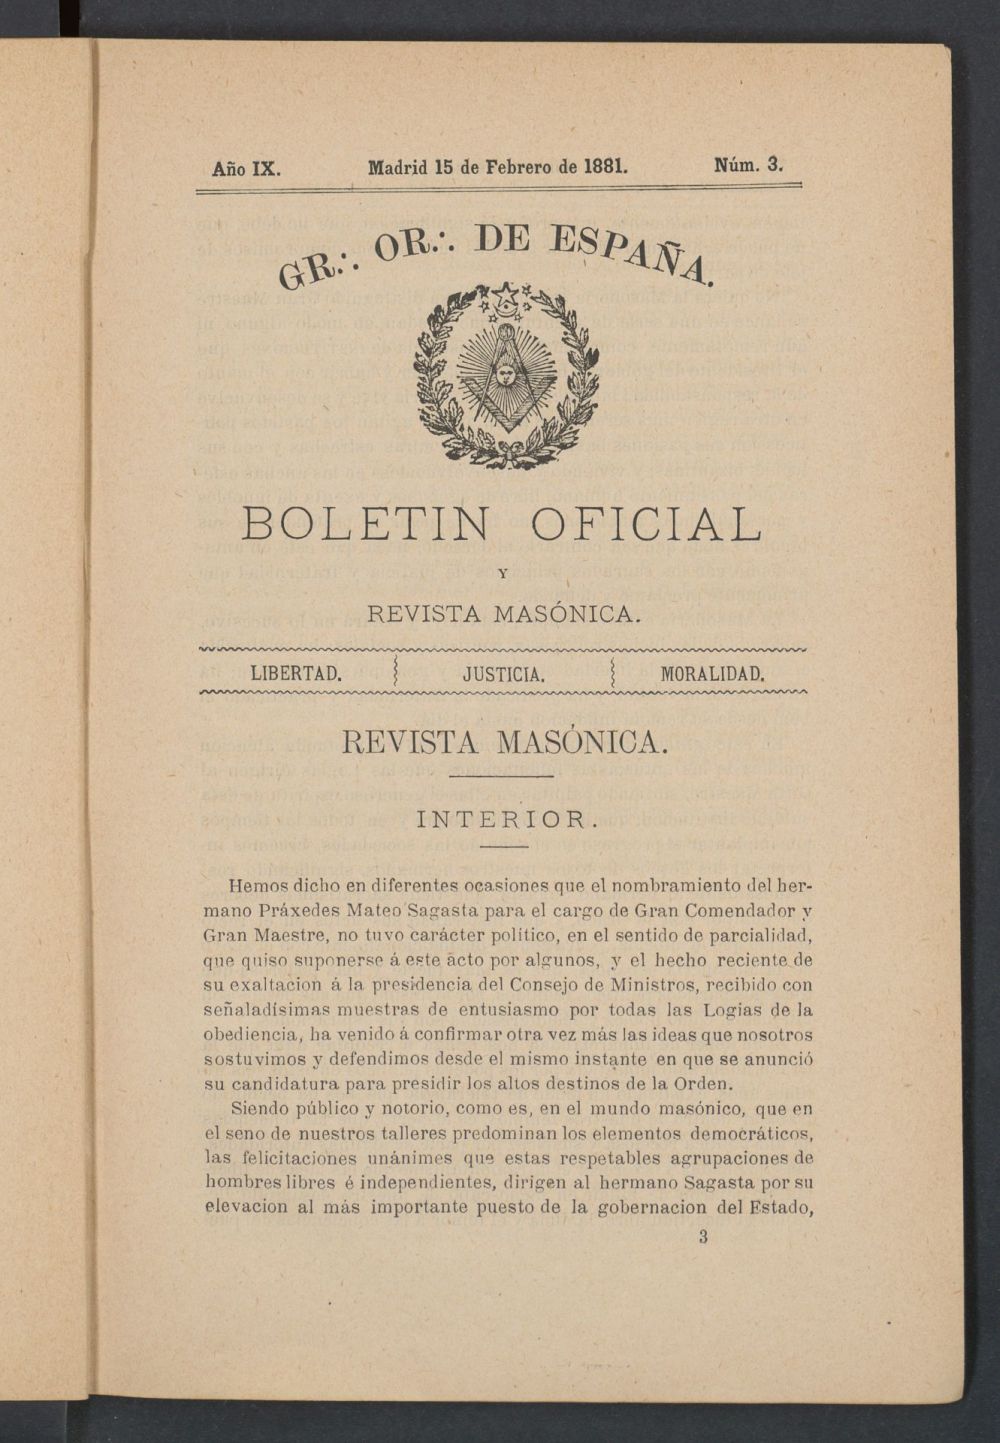 Boletn Oficial del Gran Oriente de Espaa del 15 de febrero de 1881. N 3